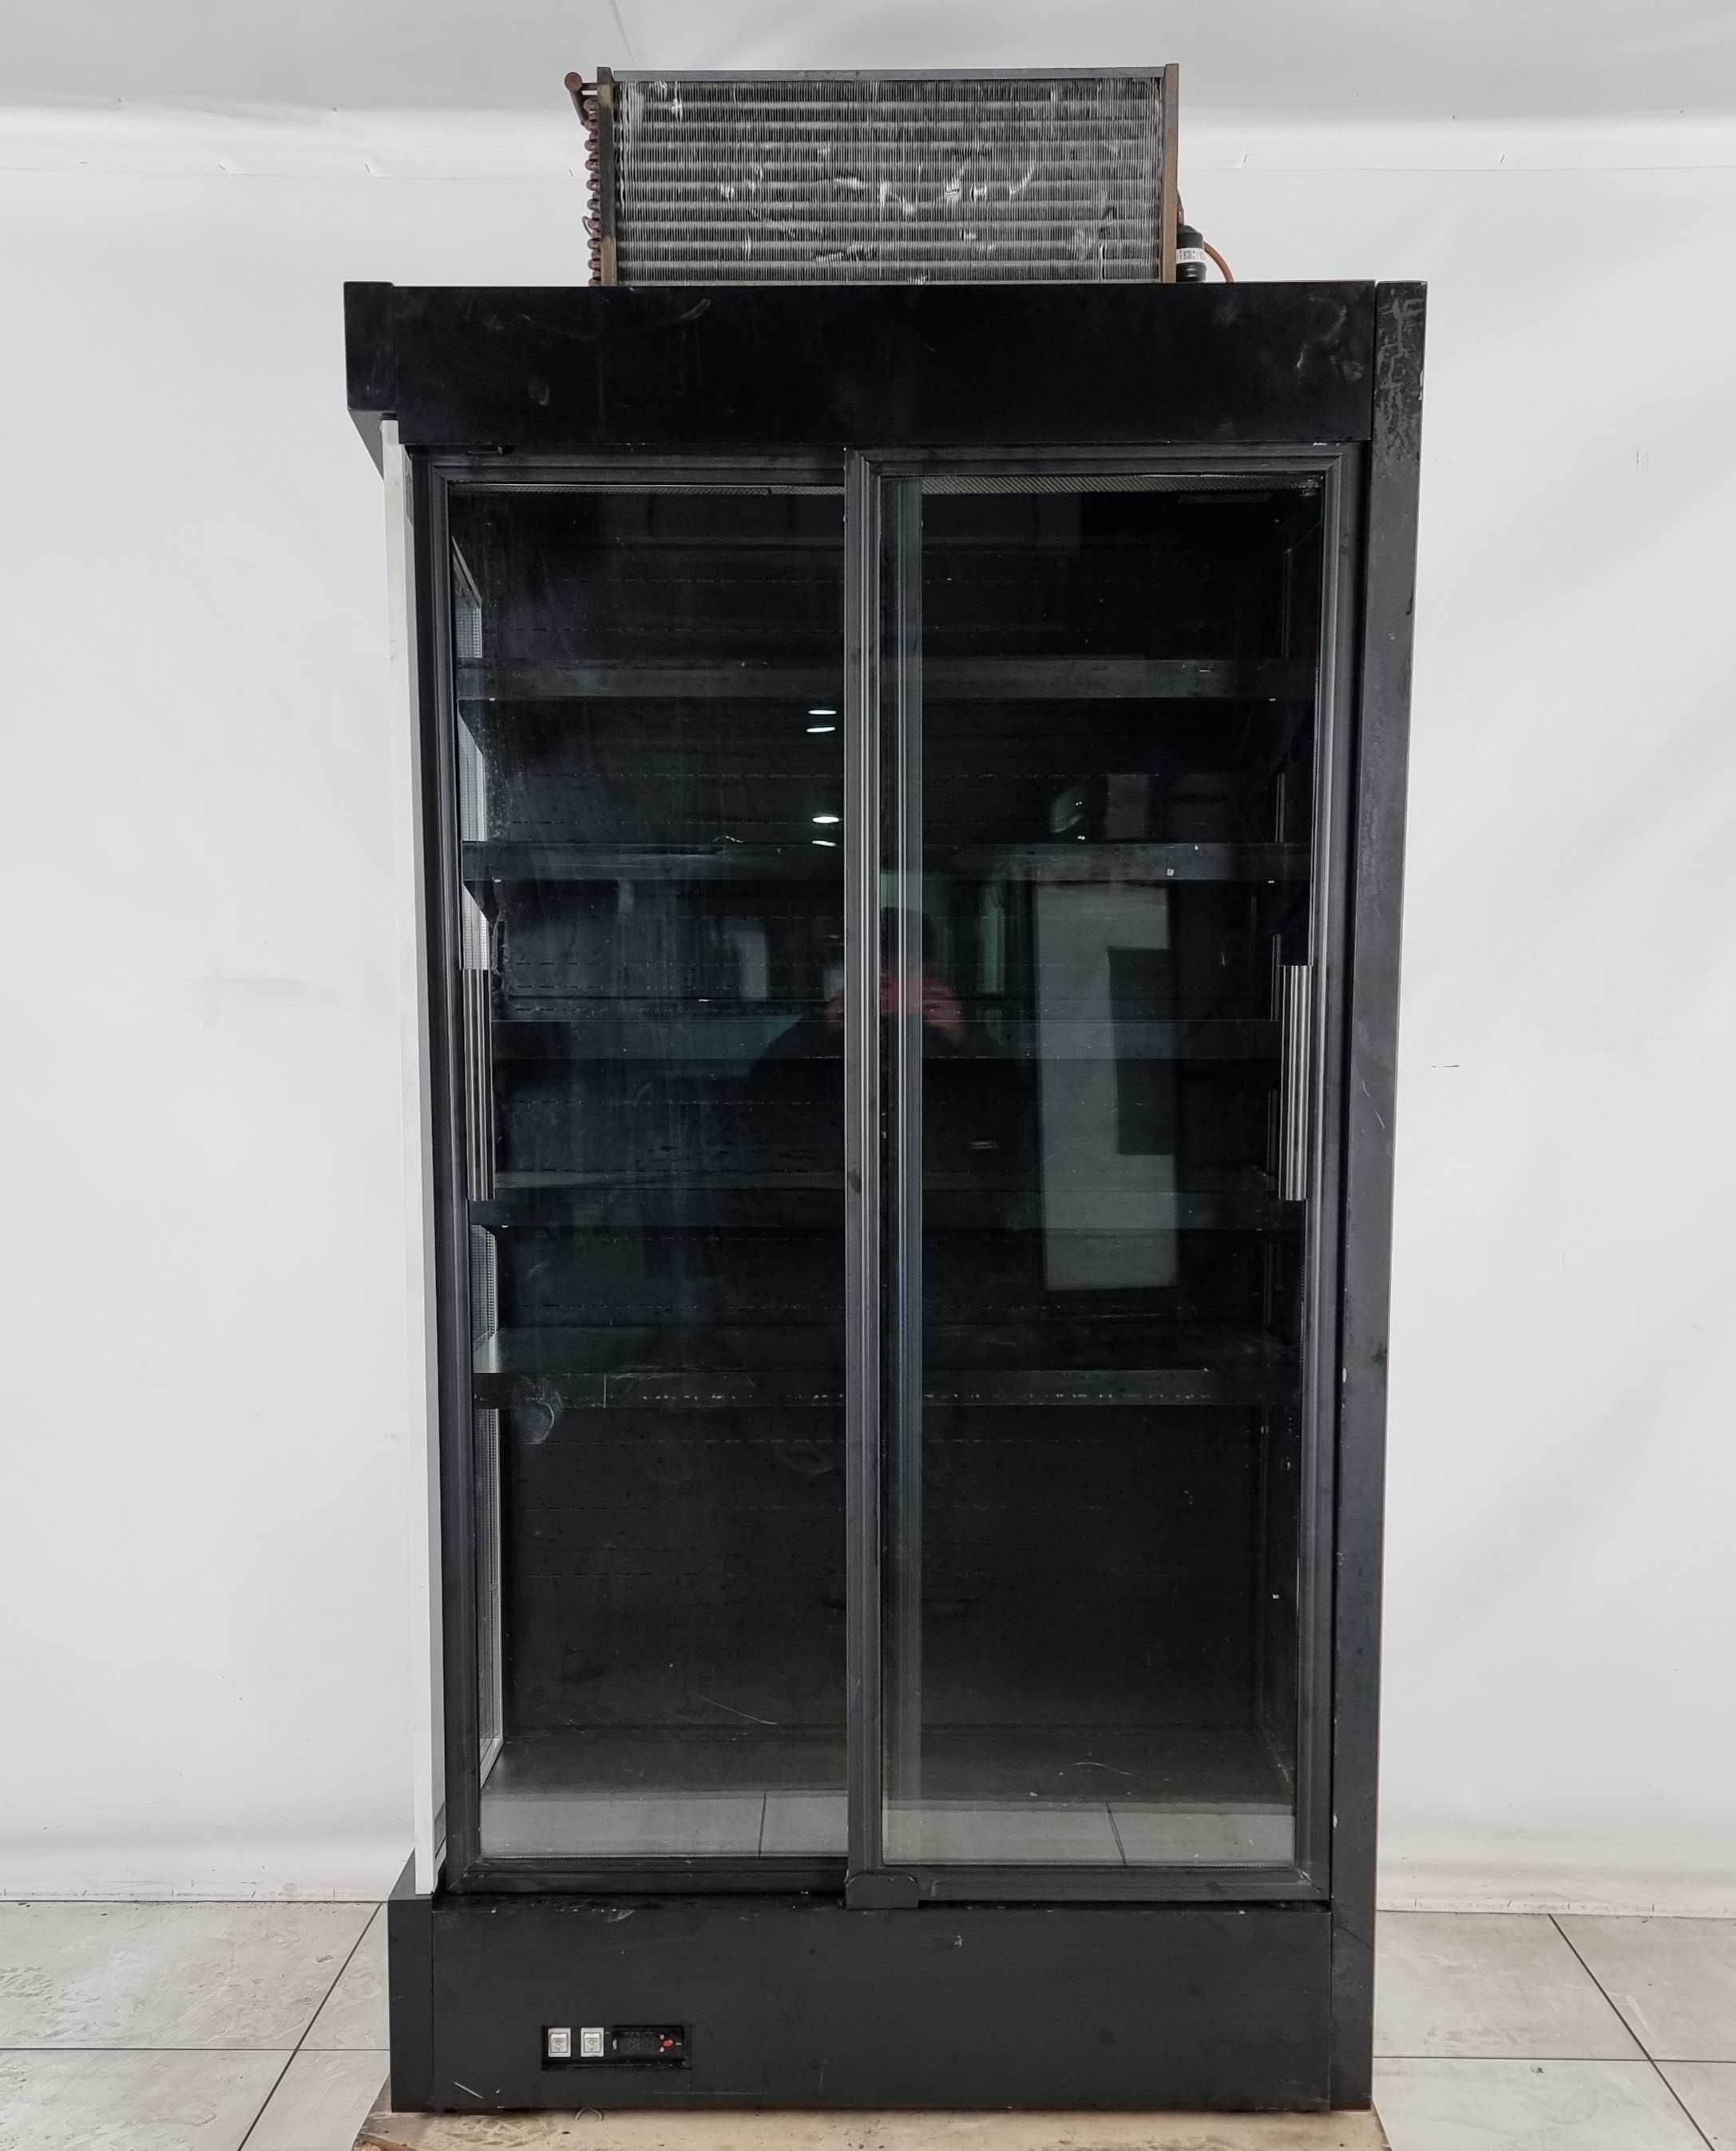 Холодильный регал (горка) «ES SYSTEM K» 1.0 м., (+2° +6°), Б/у 2508360